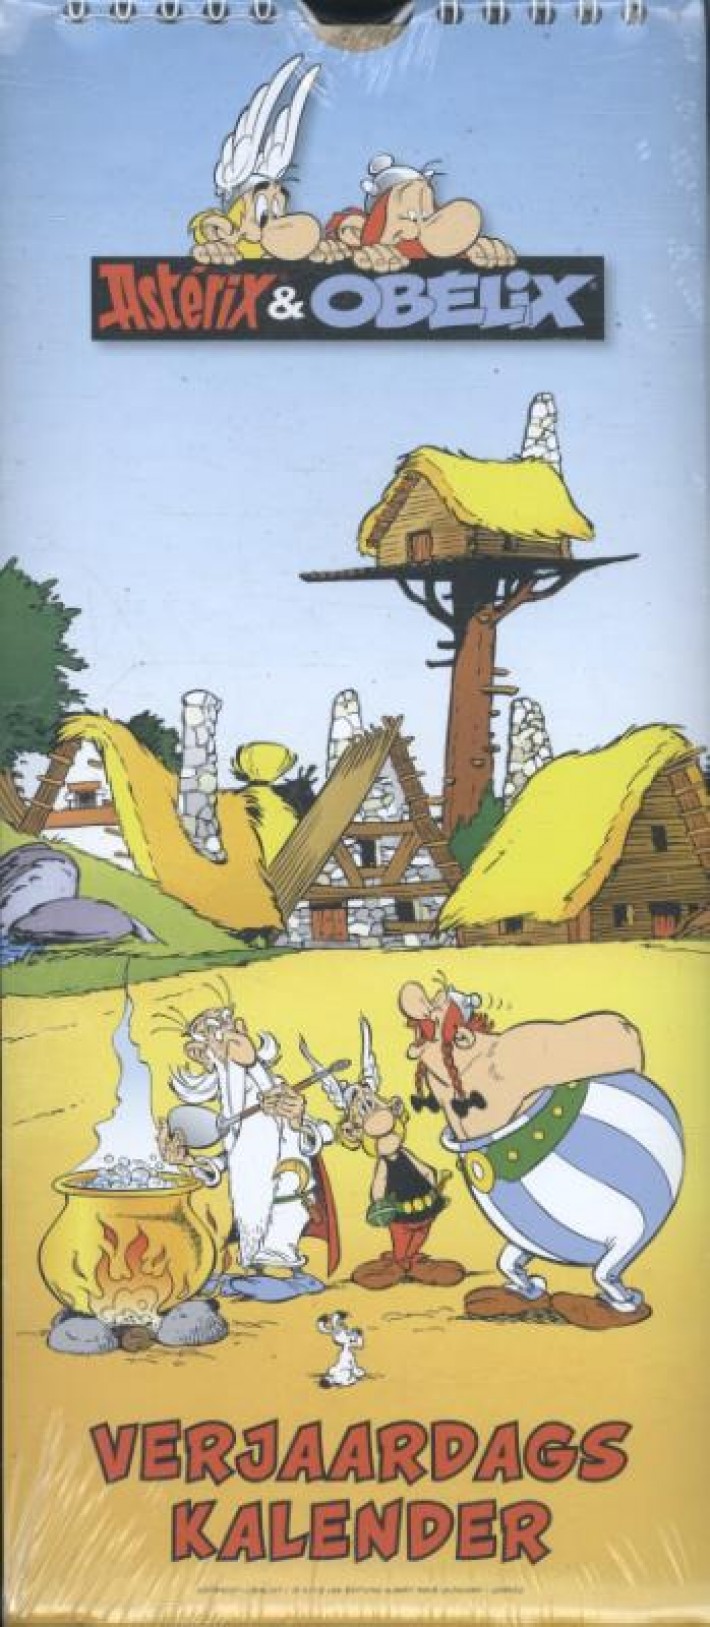 Asterix & Obelix verjaardskalender